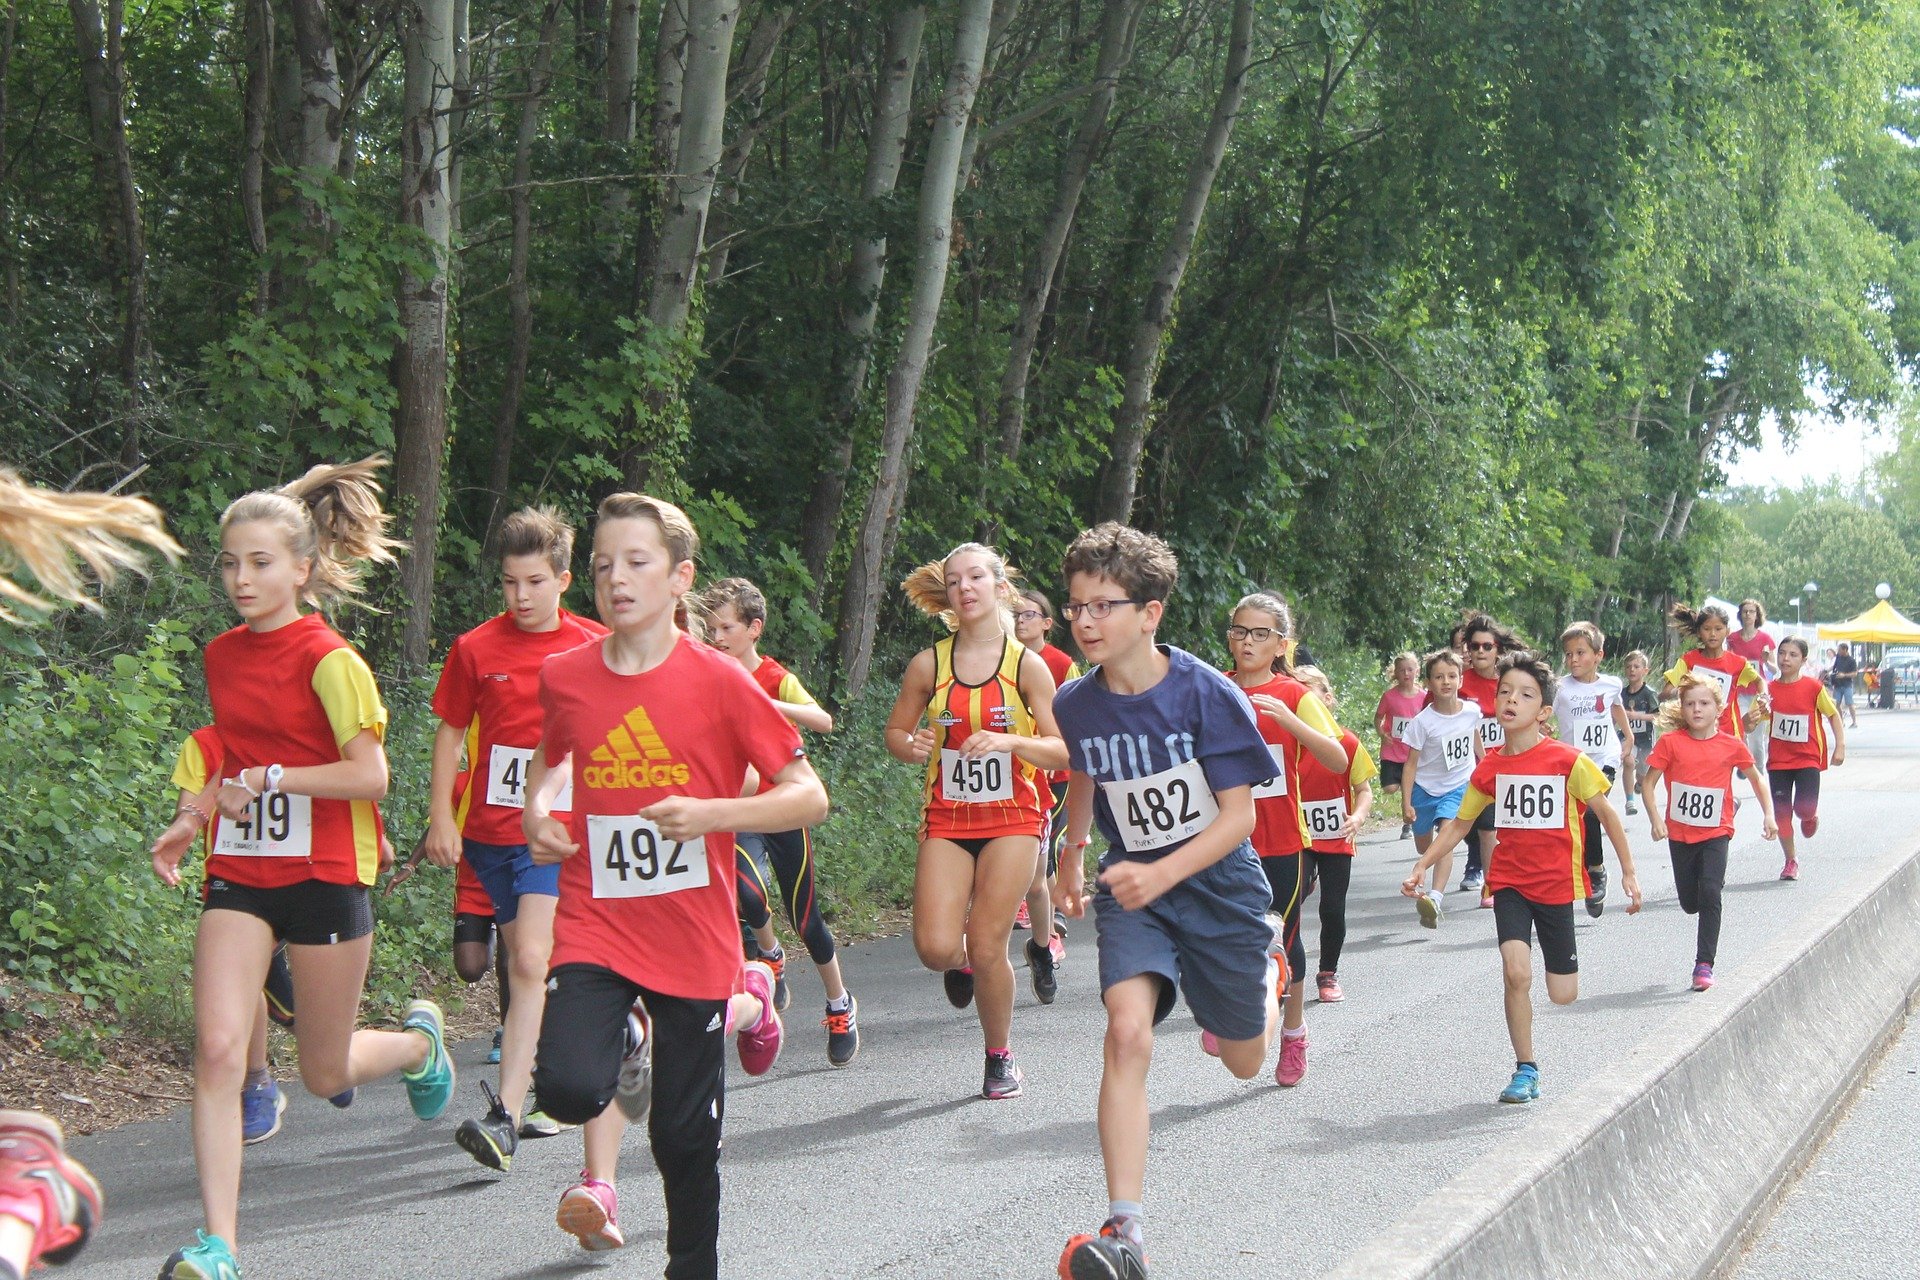 Children in a marathon | Photo: Pixabay/maestro1942 